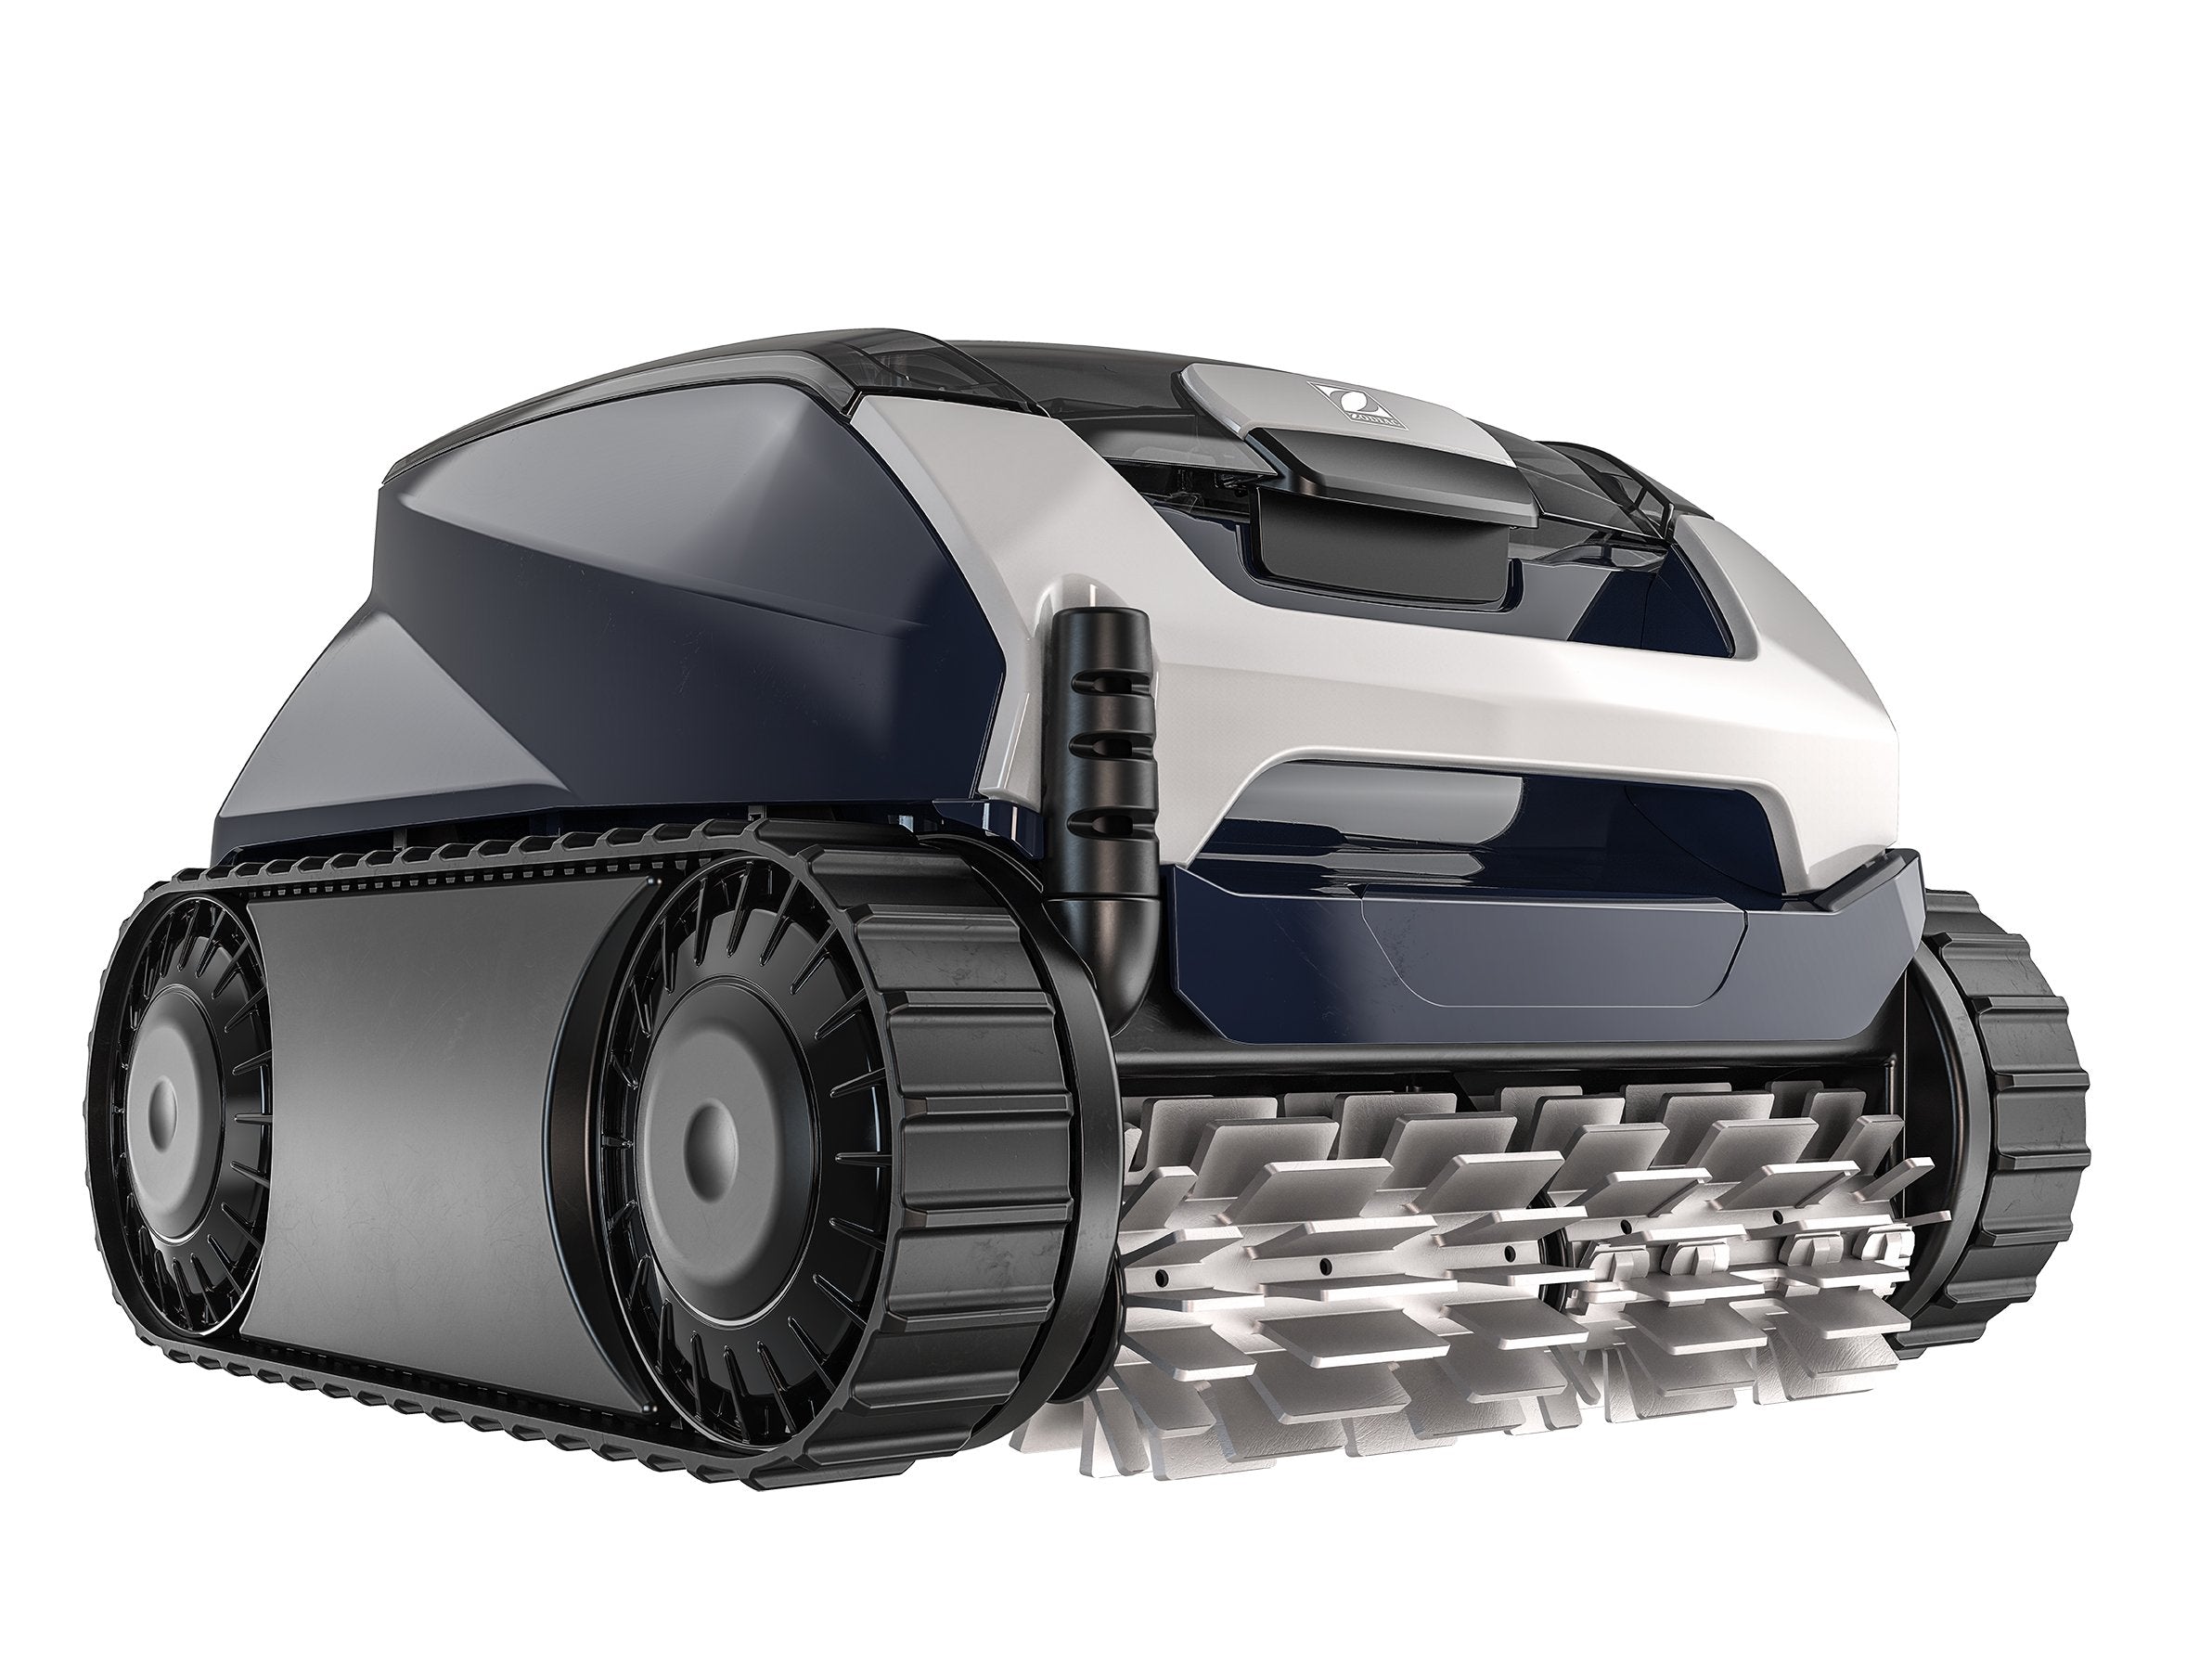 ROBOT VOYAGER RE 4600iQ Limpiafondos eléctrico y automático ZODIAC robot limpiafondos